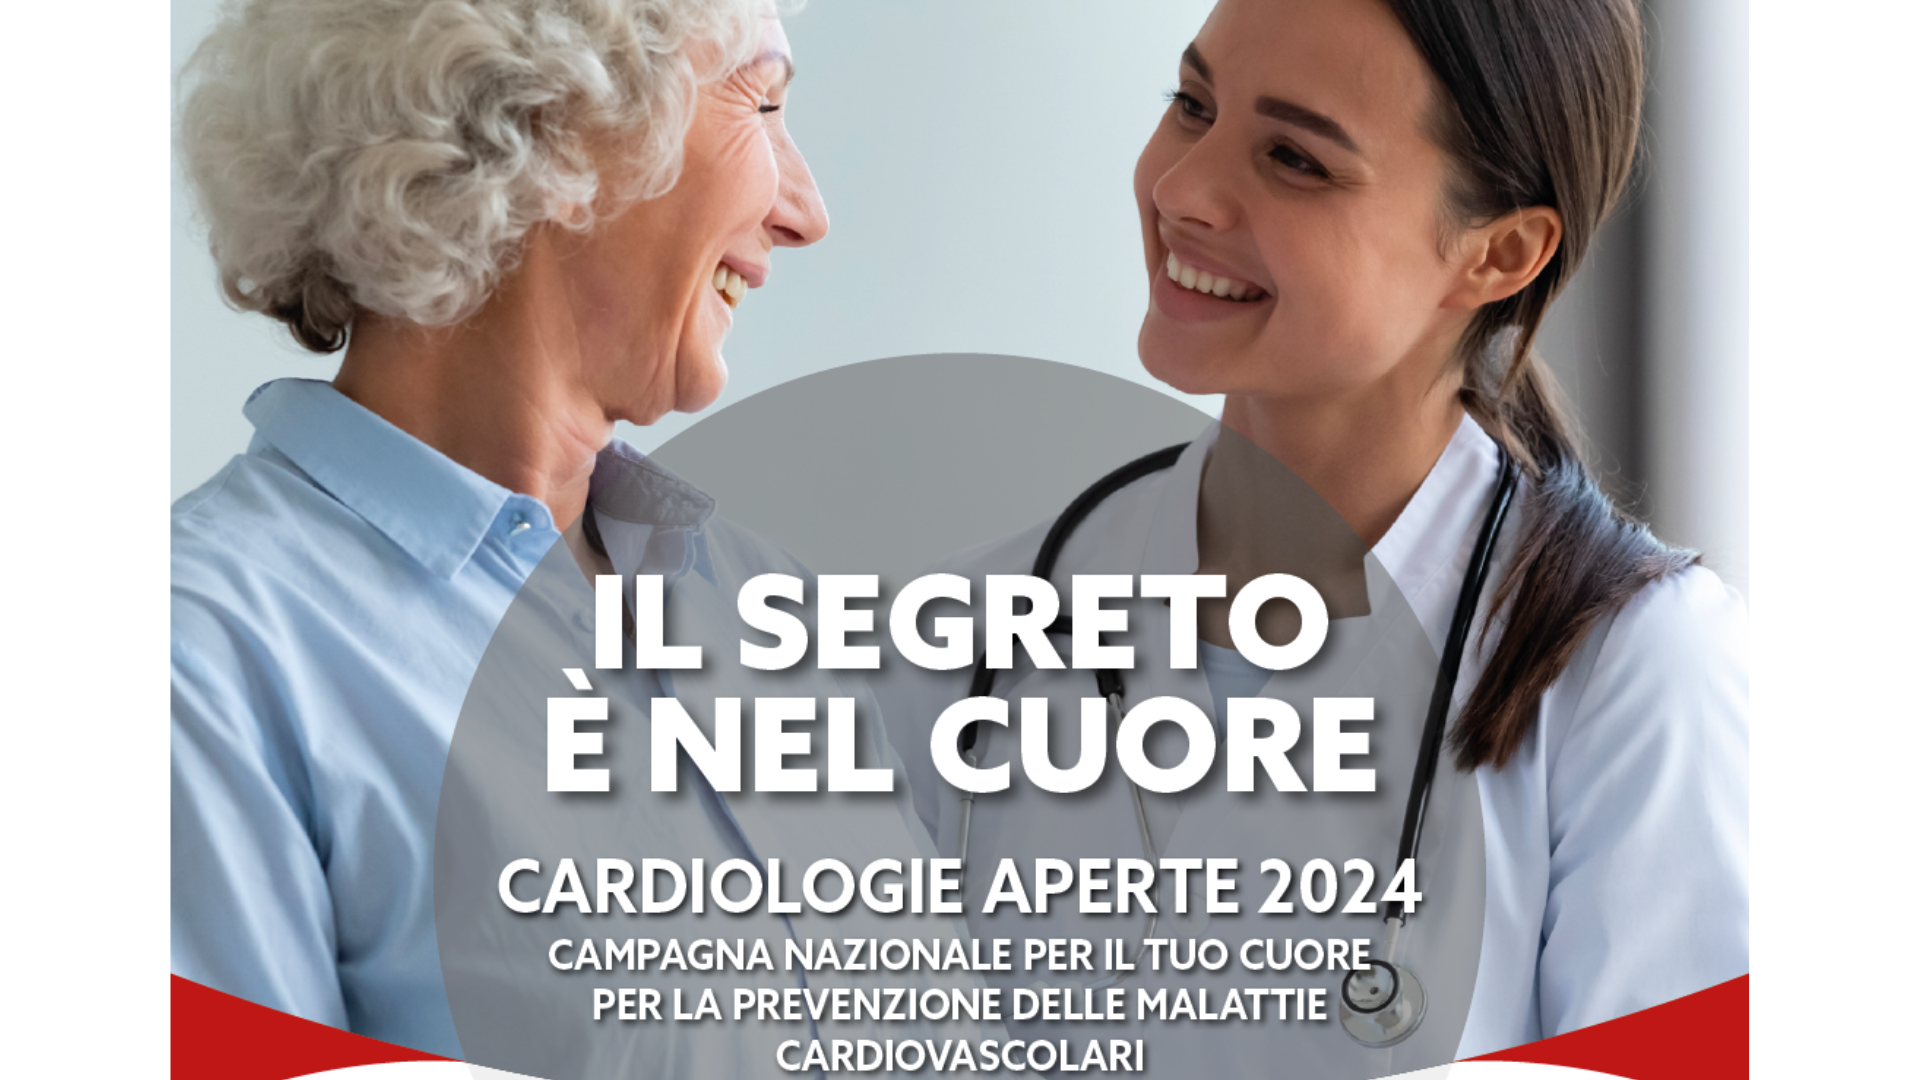 Cardiologie Aperte 2024, l’Asl di Sassari aderisce all’iniziativa